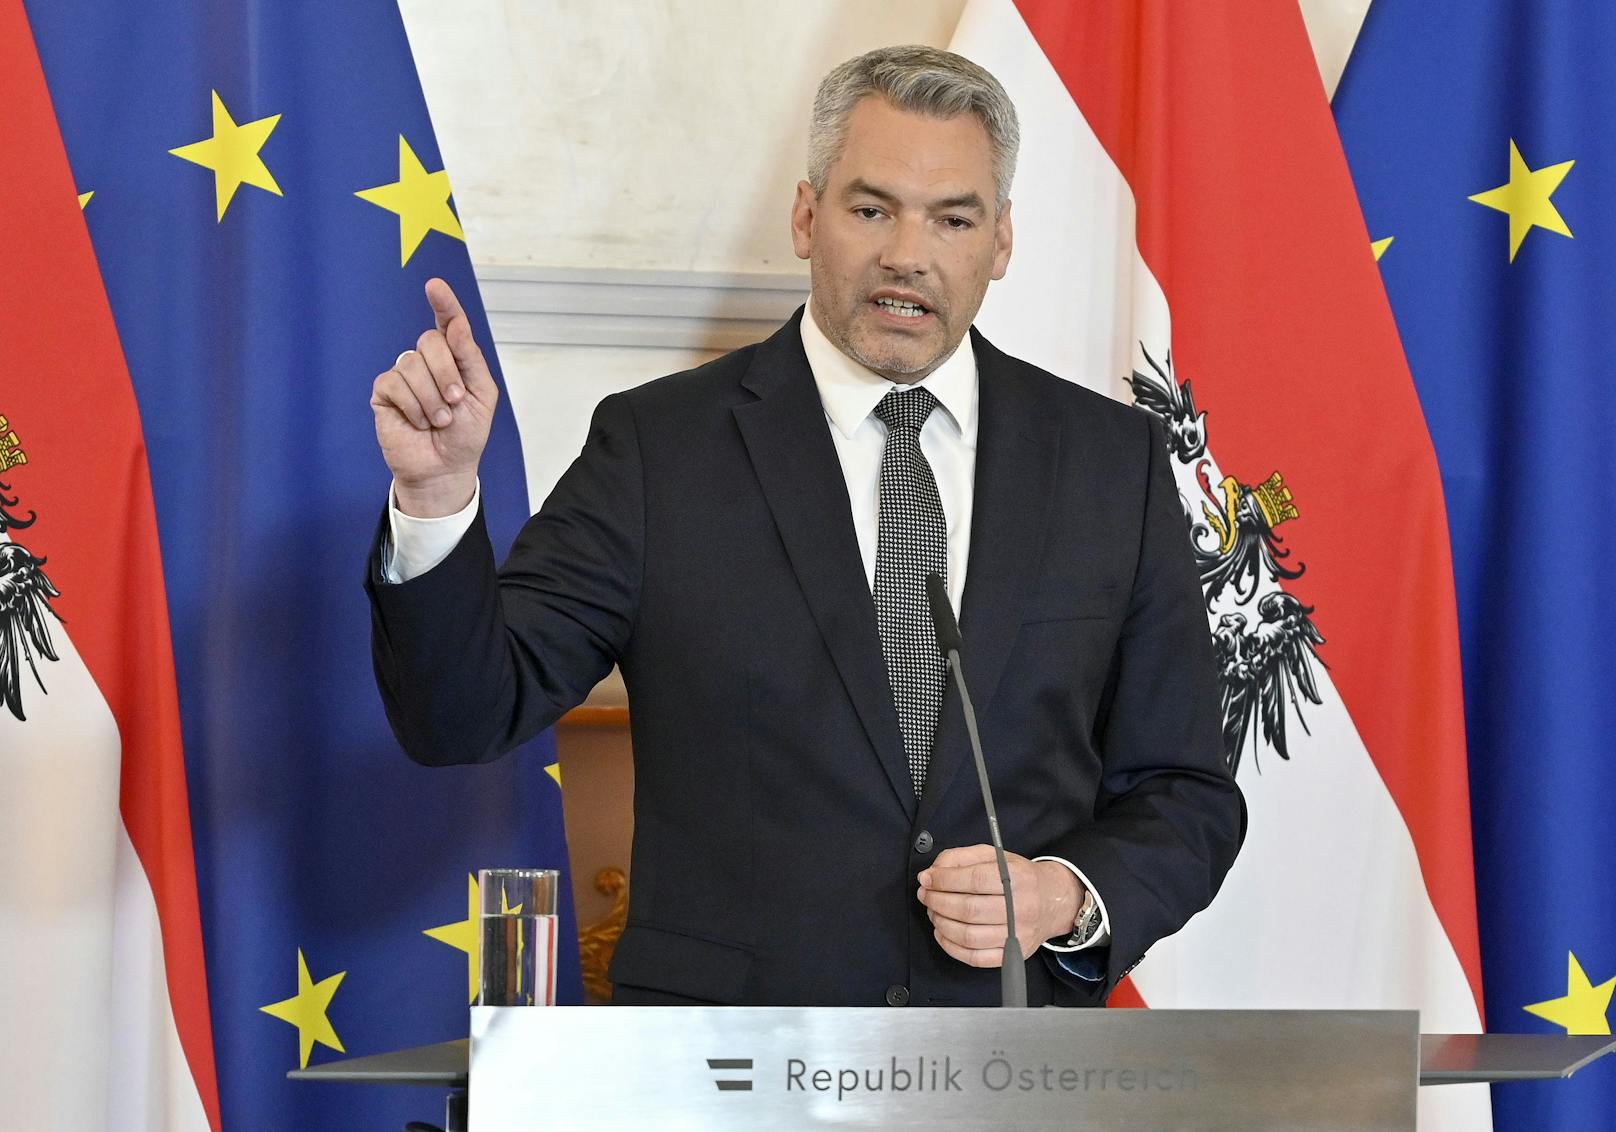 Kanzler Nehammer verspricht:&nbsp;"Österreich wird alles dafür tun, die Sanktionen gegen Kriegstreiber und Unterstützer Putins ohne Wenn und Aber durchzusetzen.“